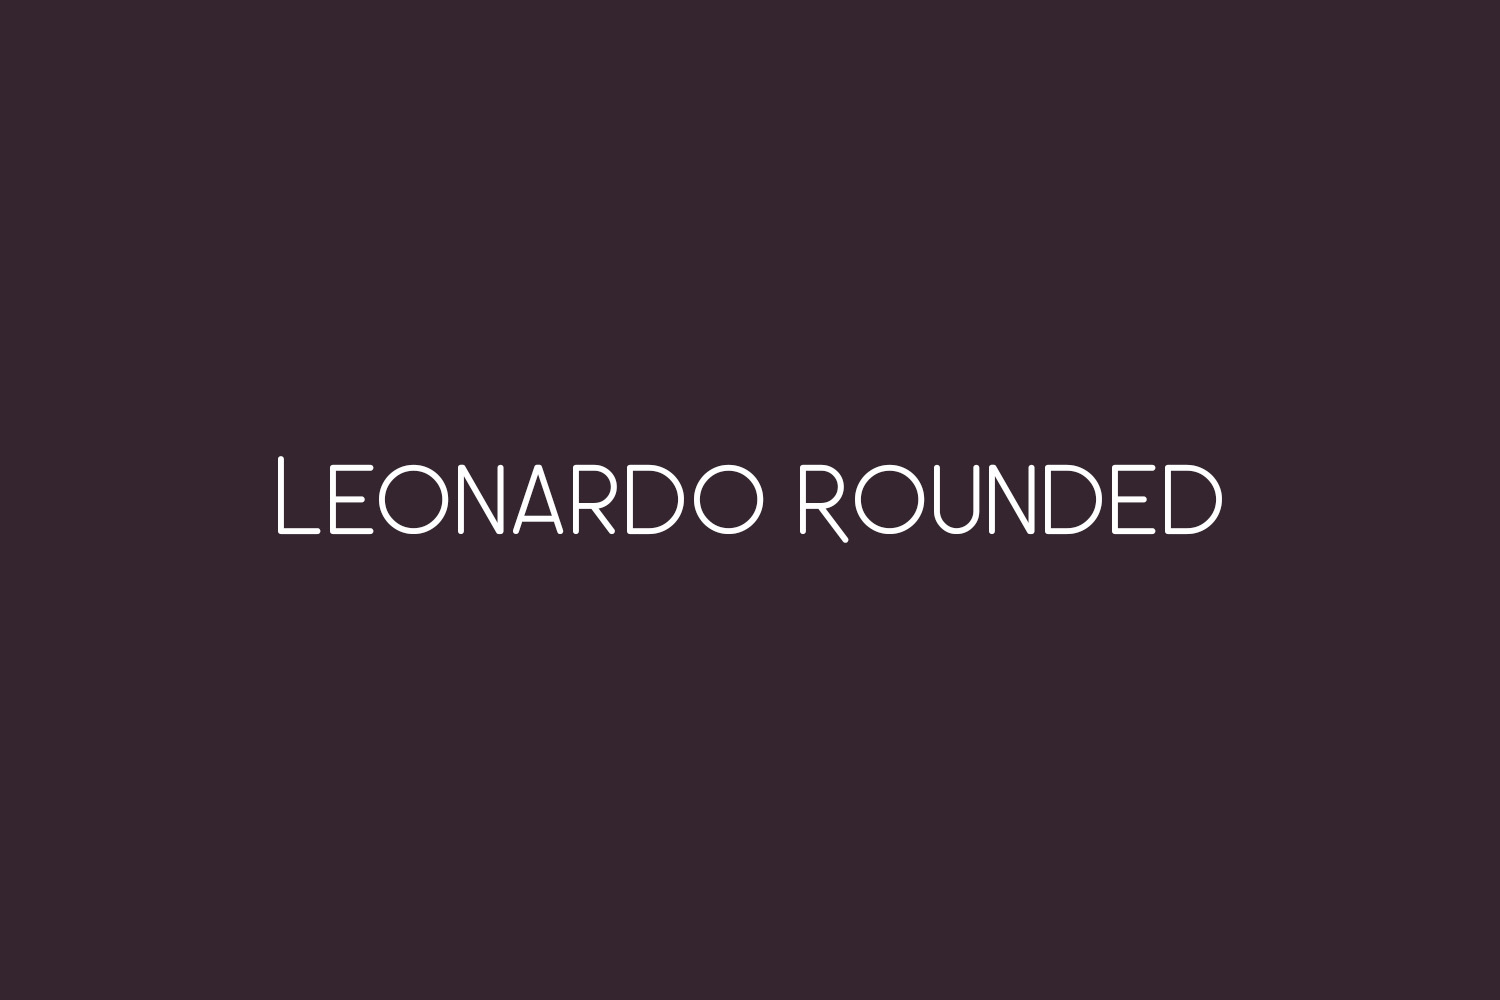 Leonardo Rounded Free Font